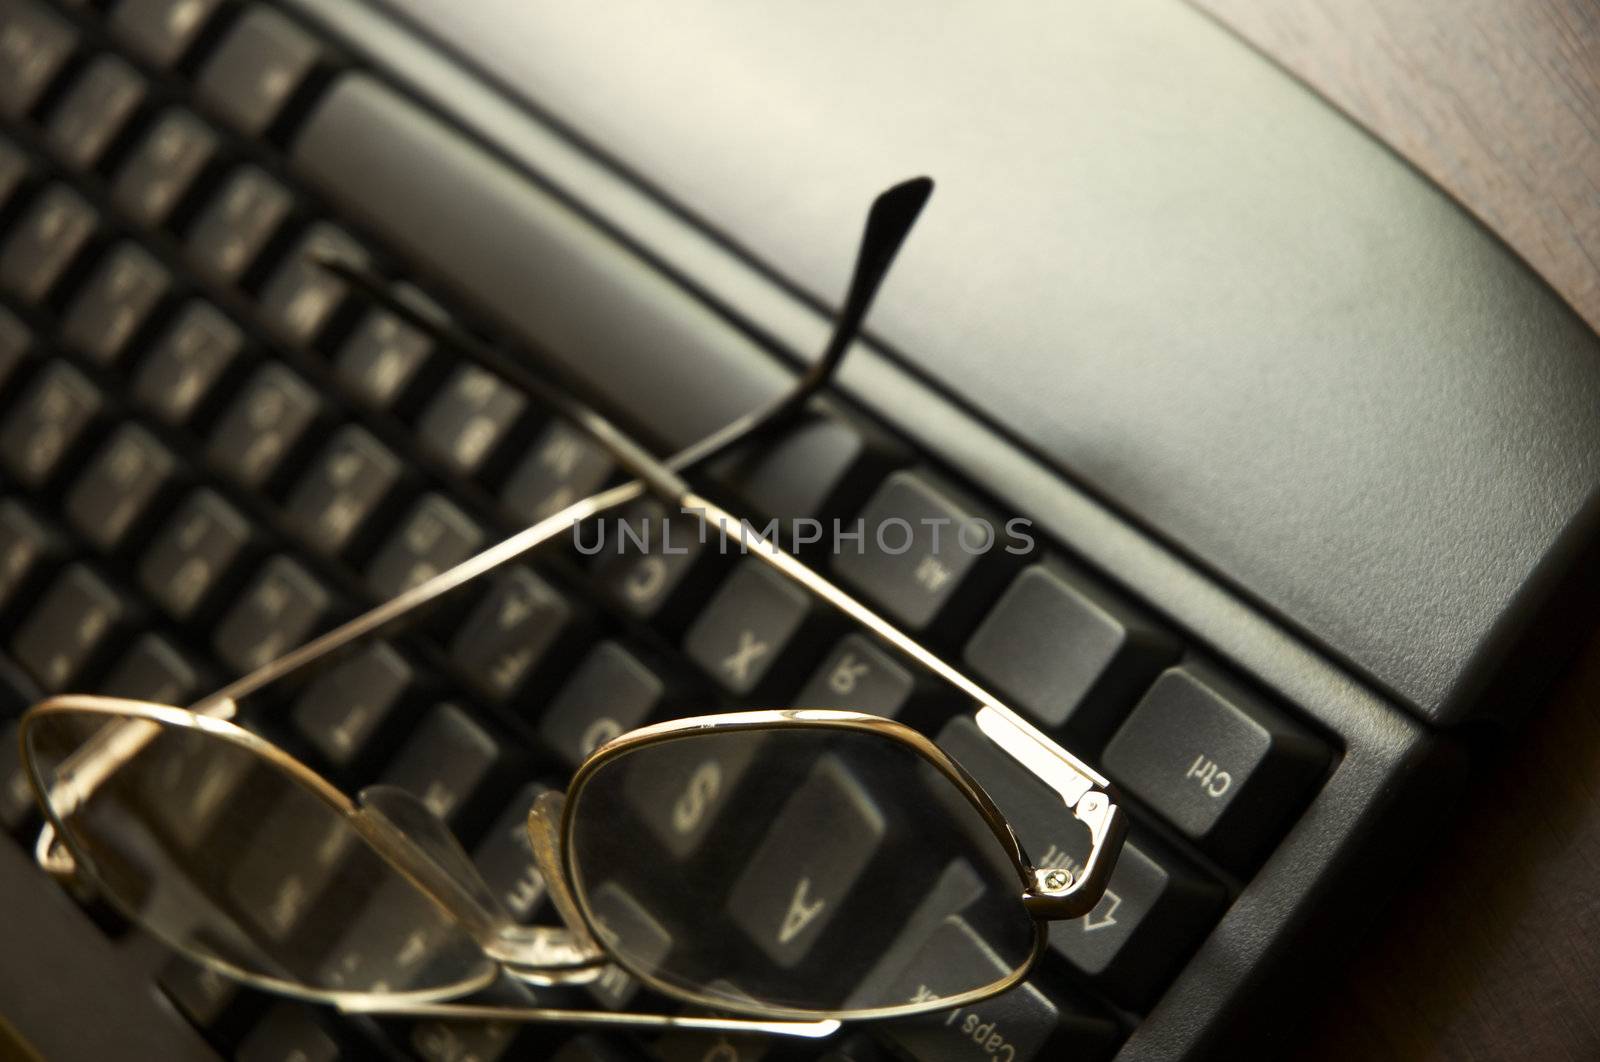 black keyboard and glasses